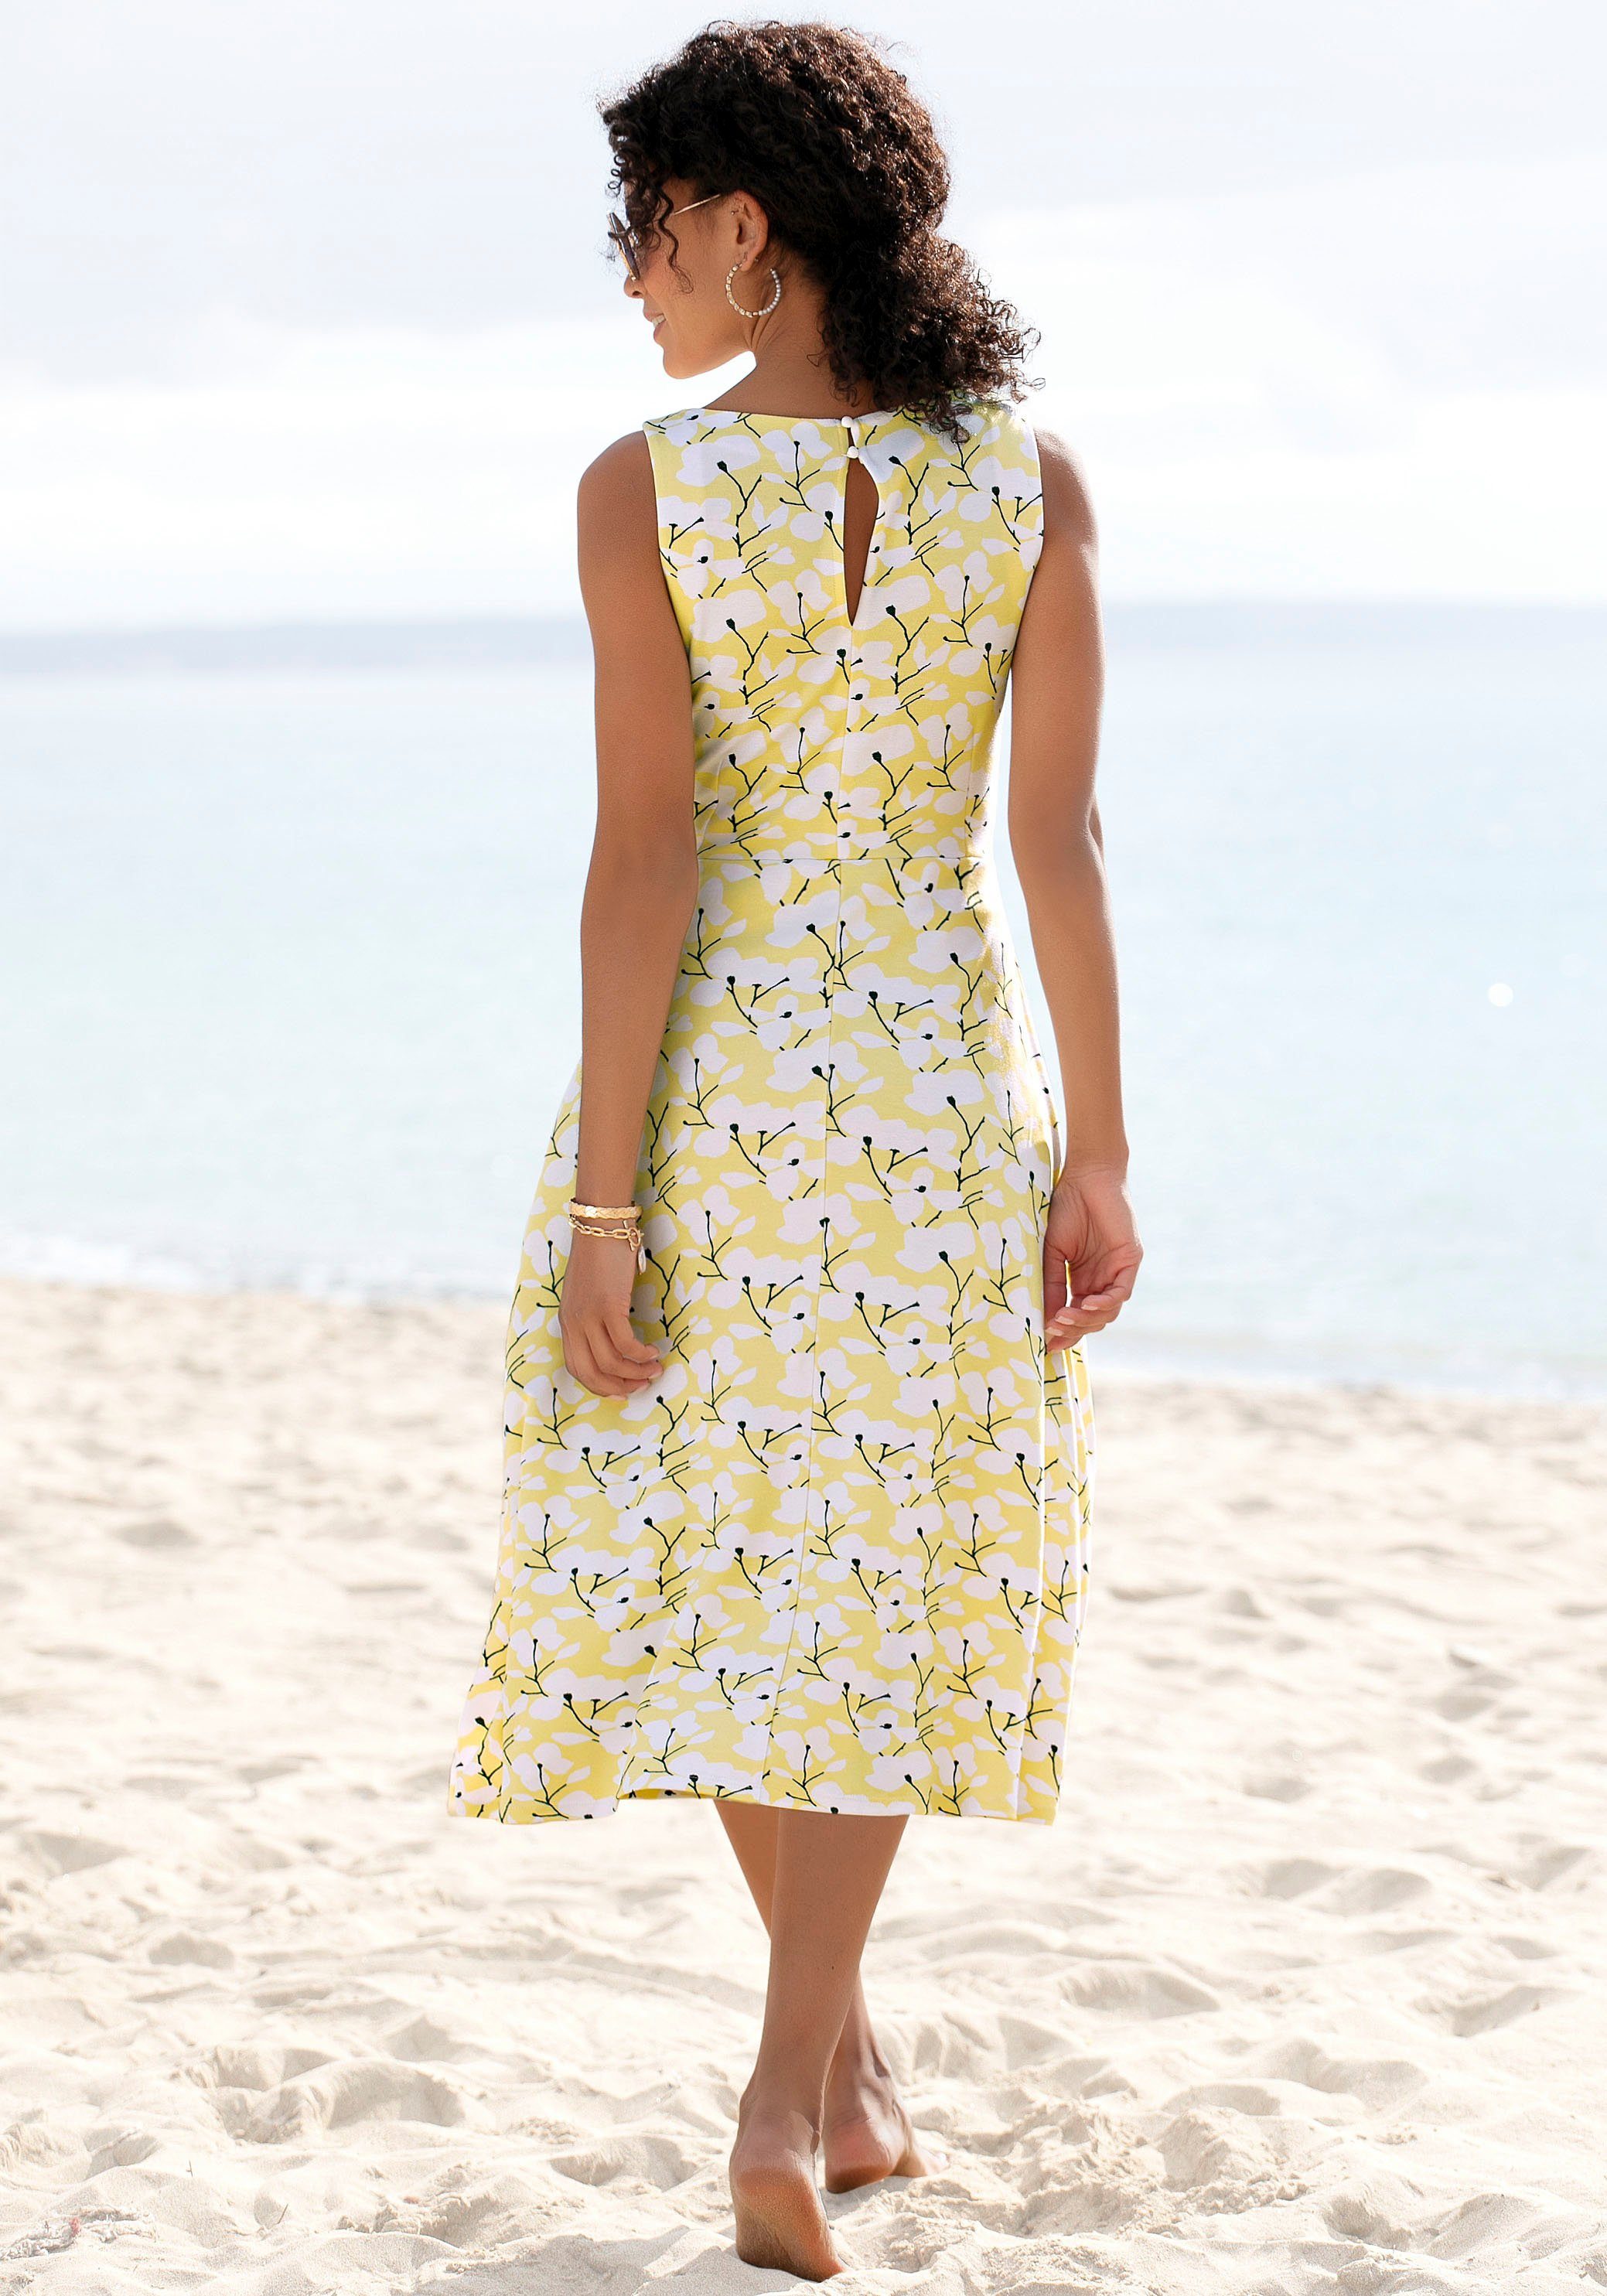 Beachtime Sommerkleid mit Blumendruck, Strandbekleidung gelb-creme-bedruckt Strandmode